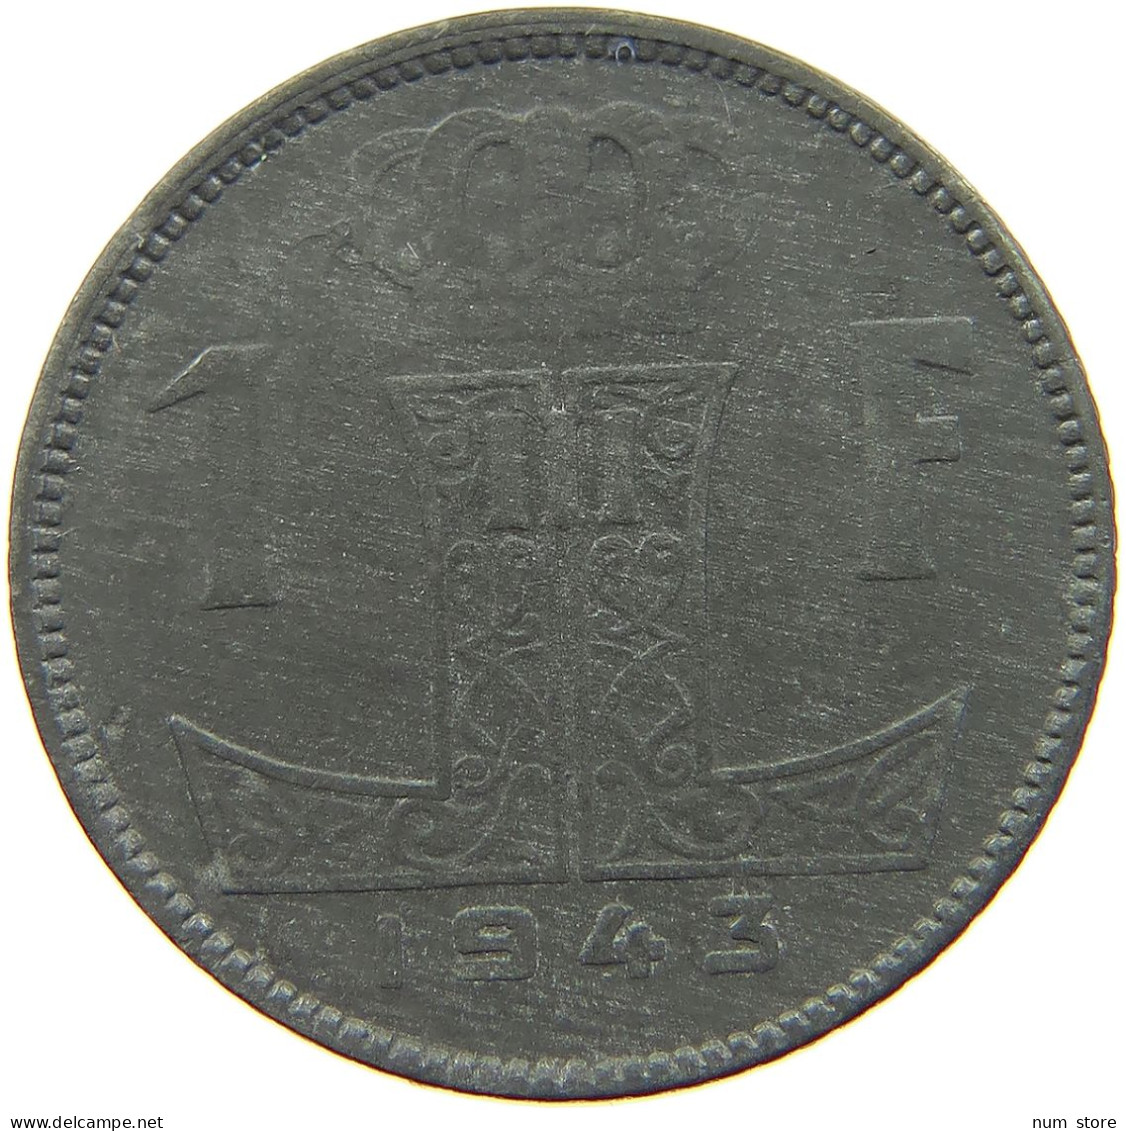 BELGIUM 1 FRANC 1943 #a006 0355 - 1 Franc